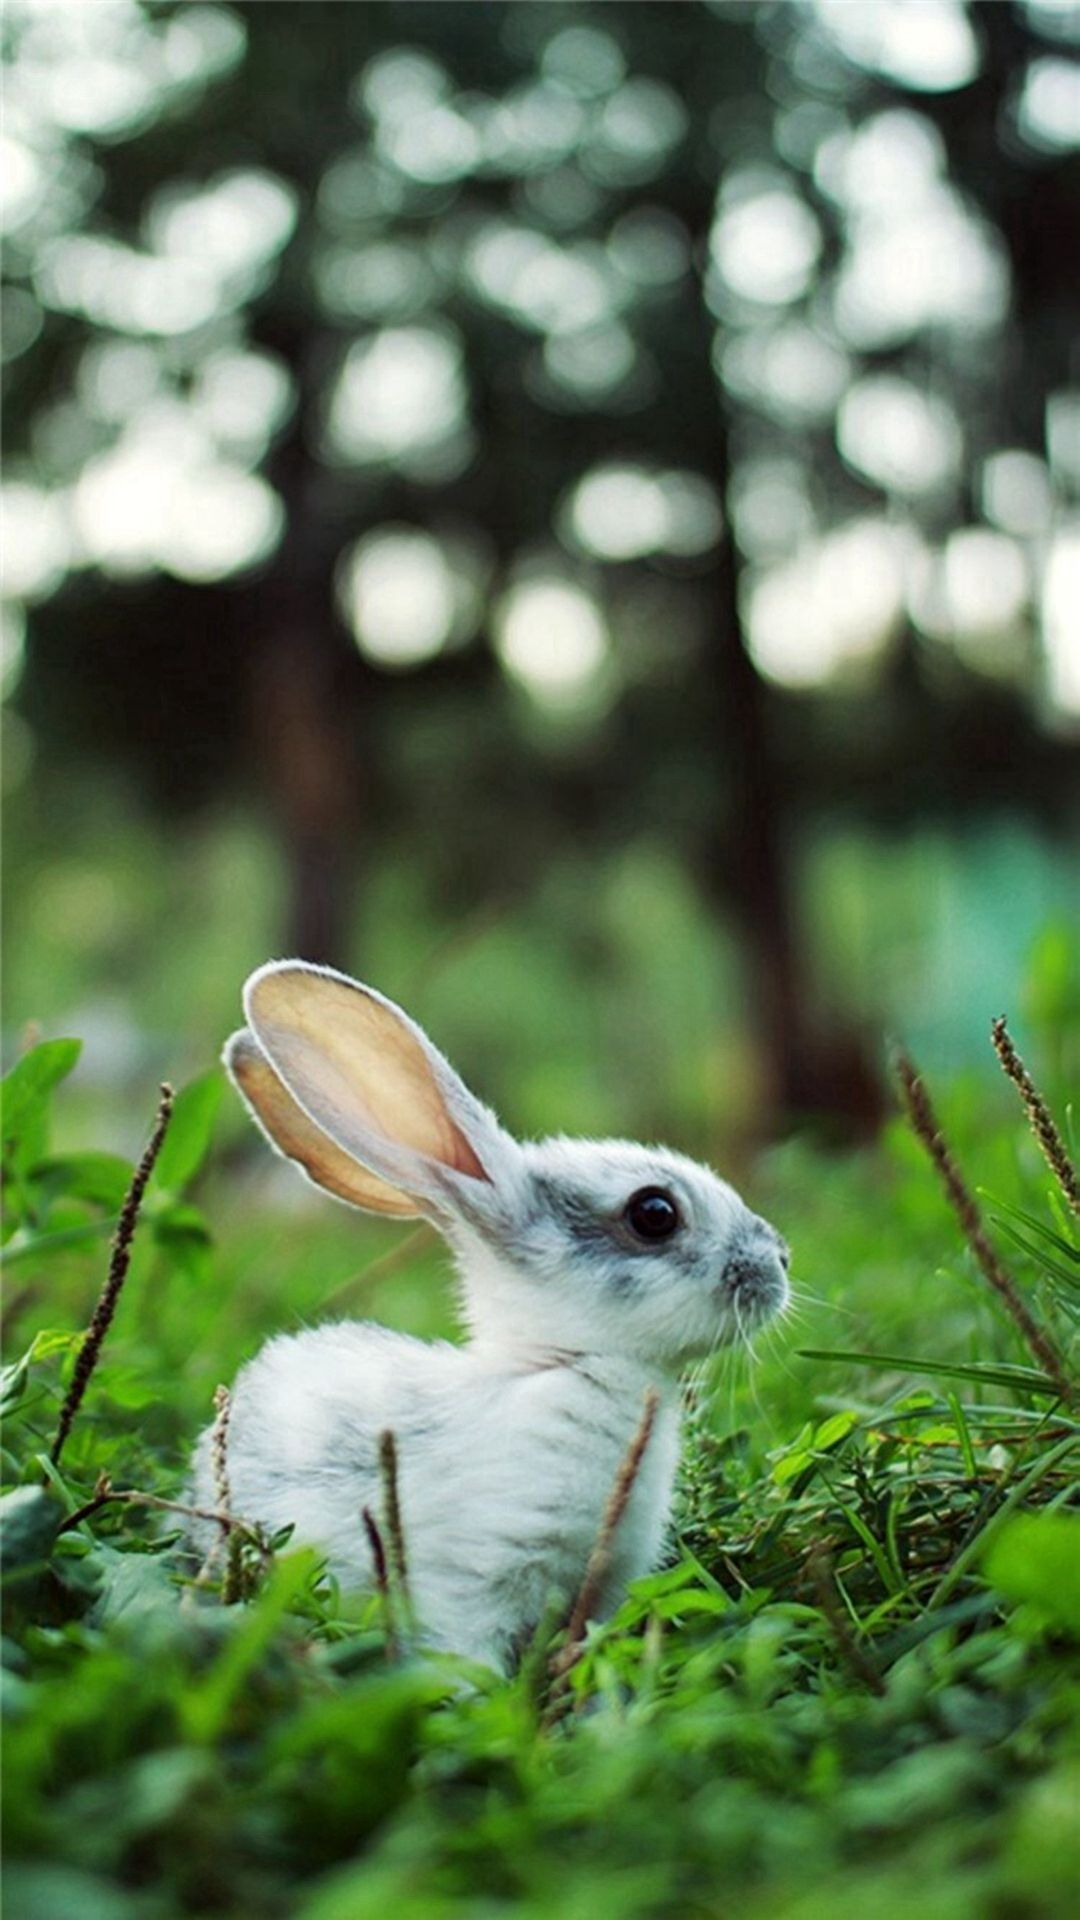 منظره ای تماشایی از خرگوش دلربا در دامن سبز طبیعت 